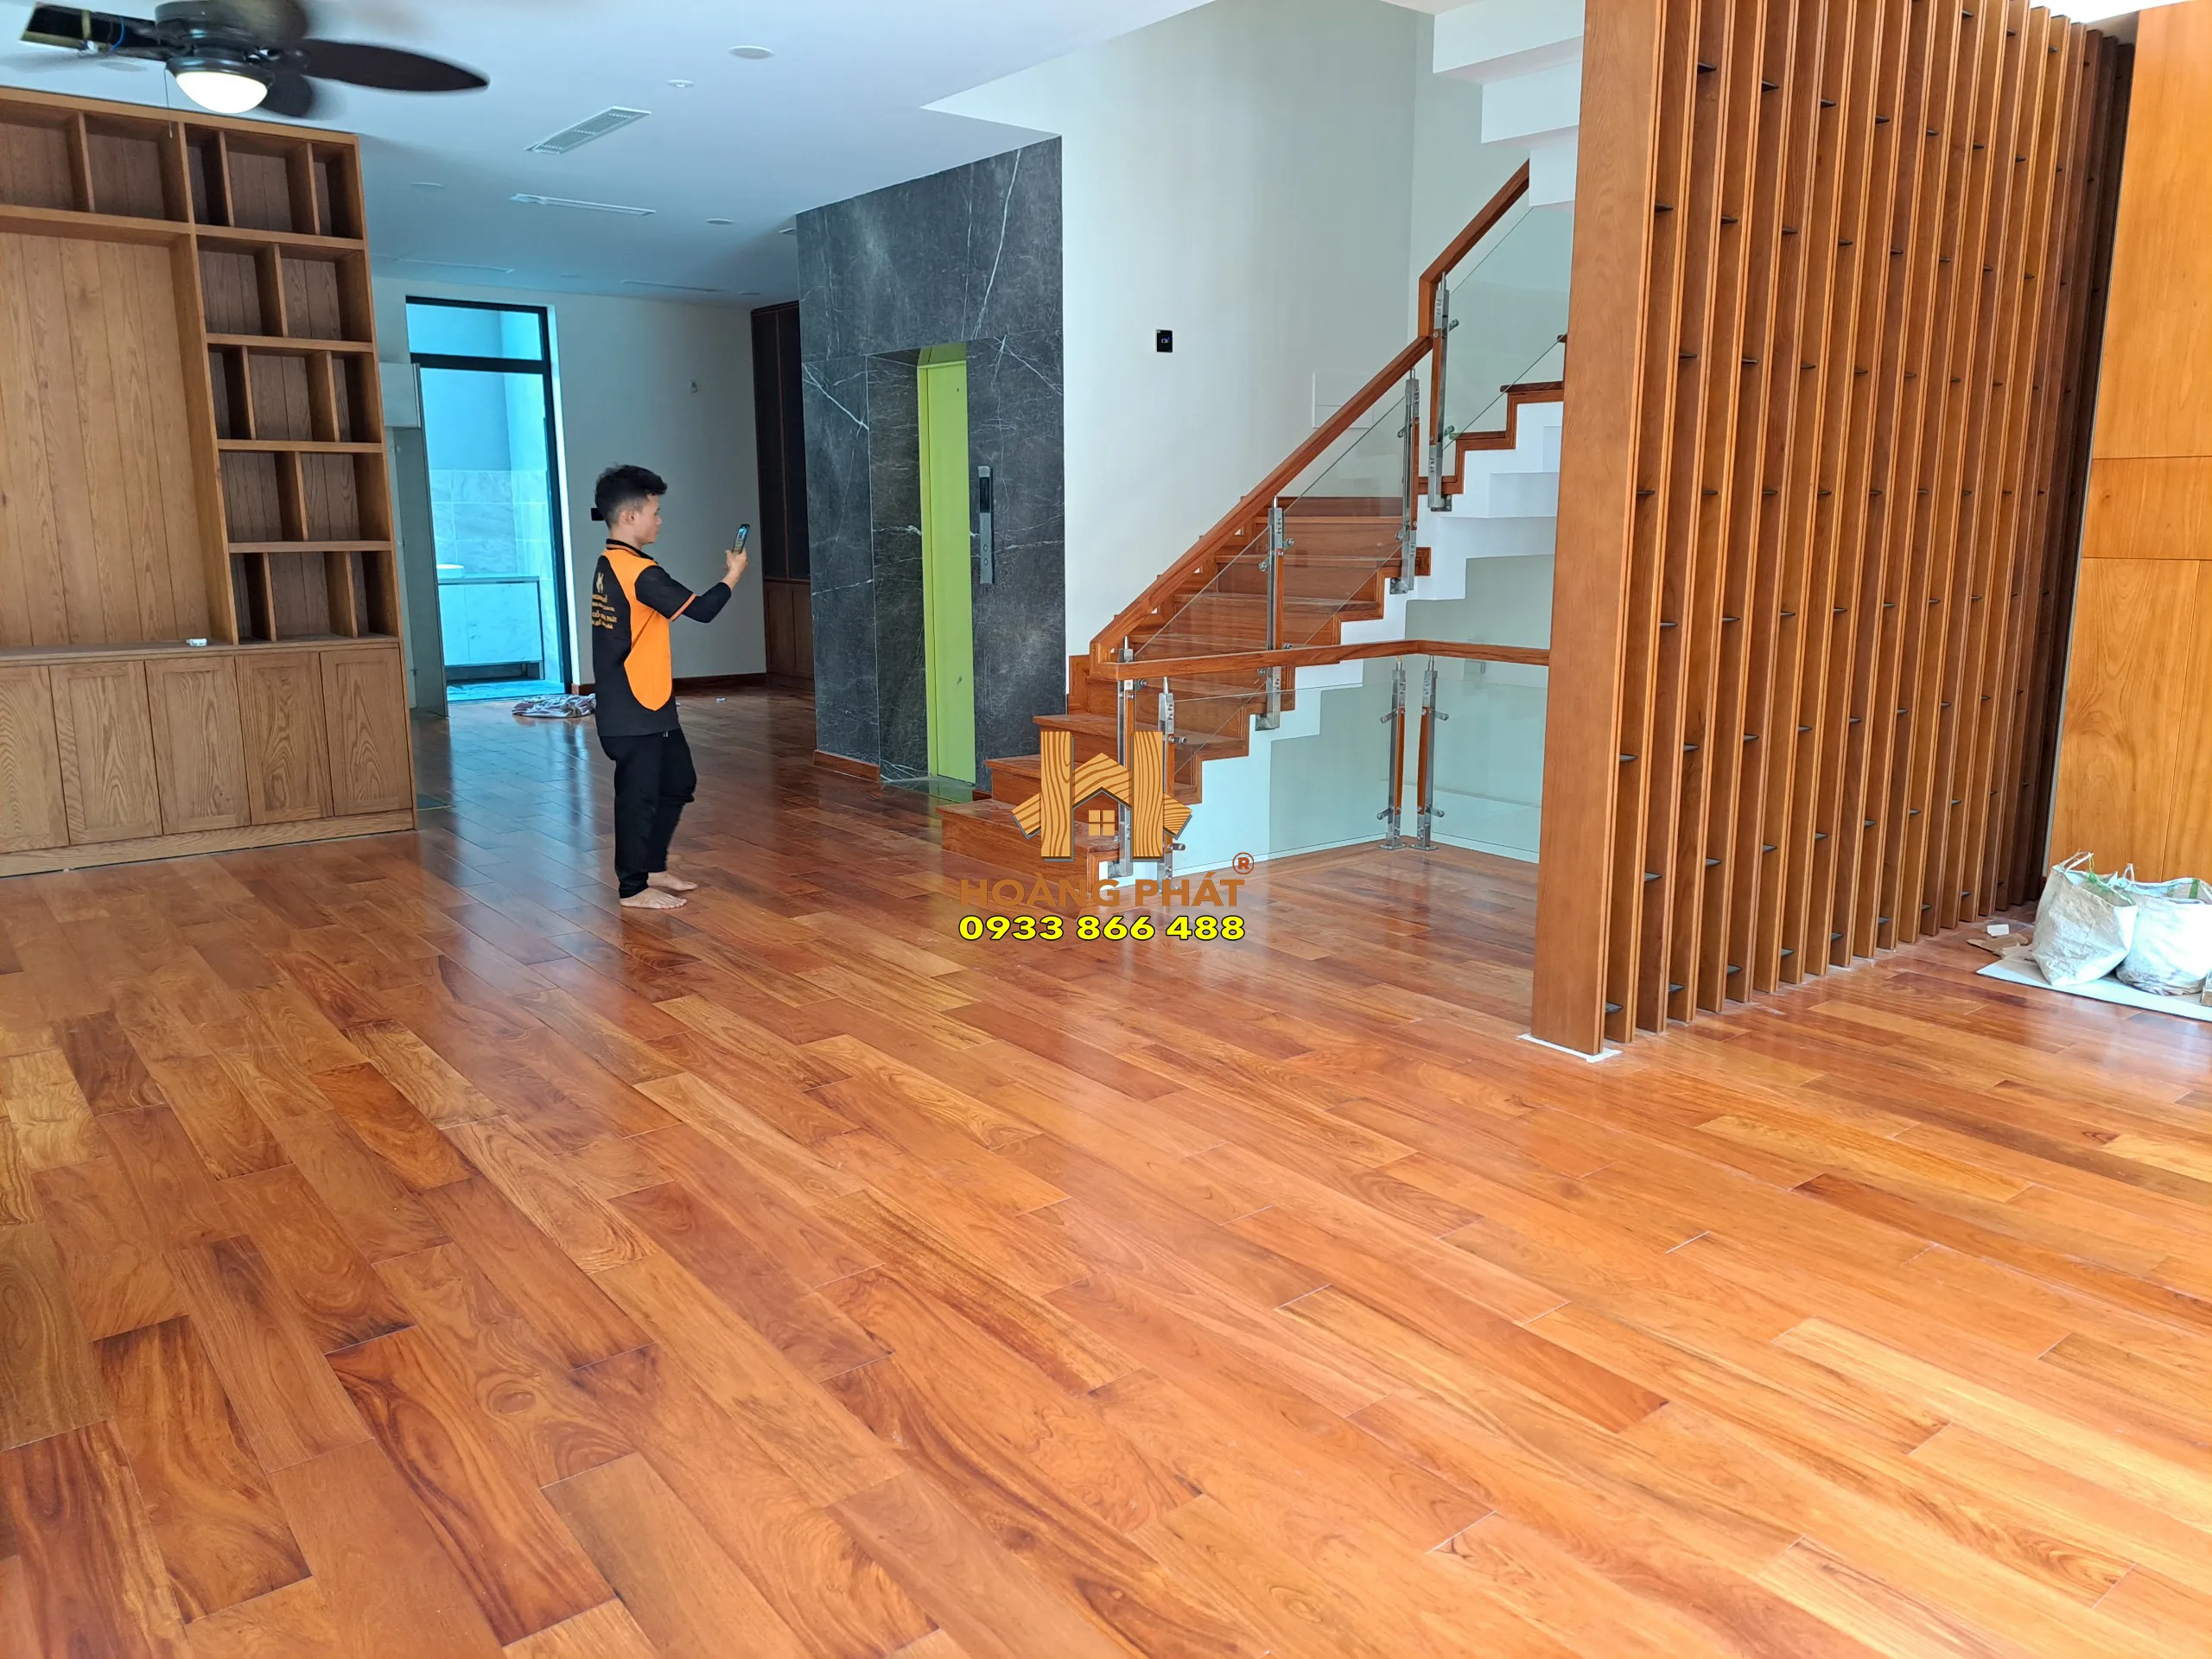 Hoàn thiện công trình lắp đặt sàn gỗ Gõ Đỏ lào Solid tại đường Hoàng Quốc Việt, Quận 7, TP. HCM